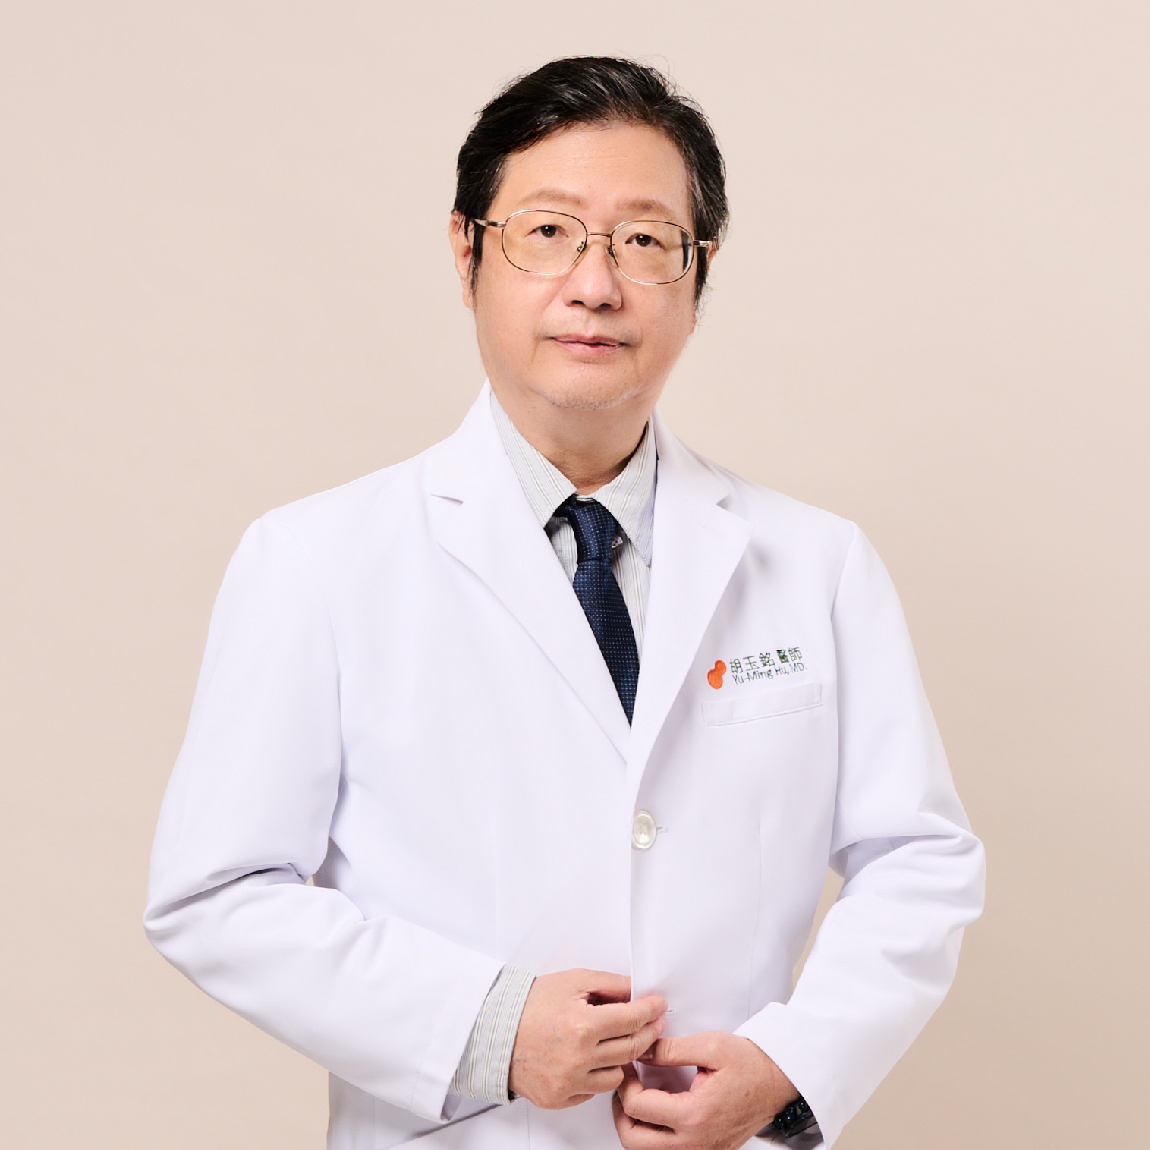 胡玉銘 Yu-Ming Hu, MD.